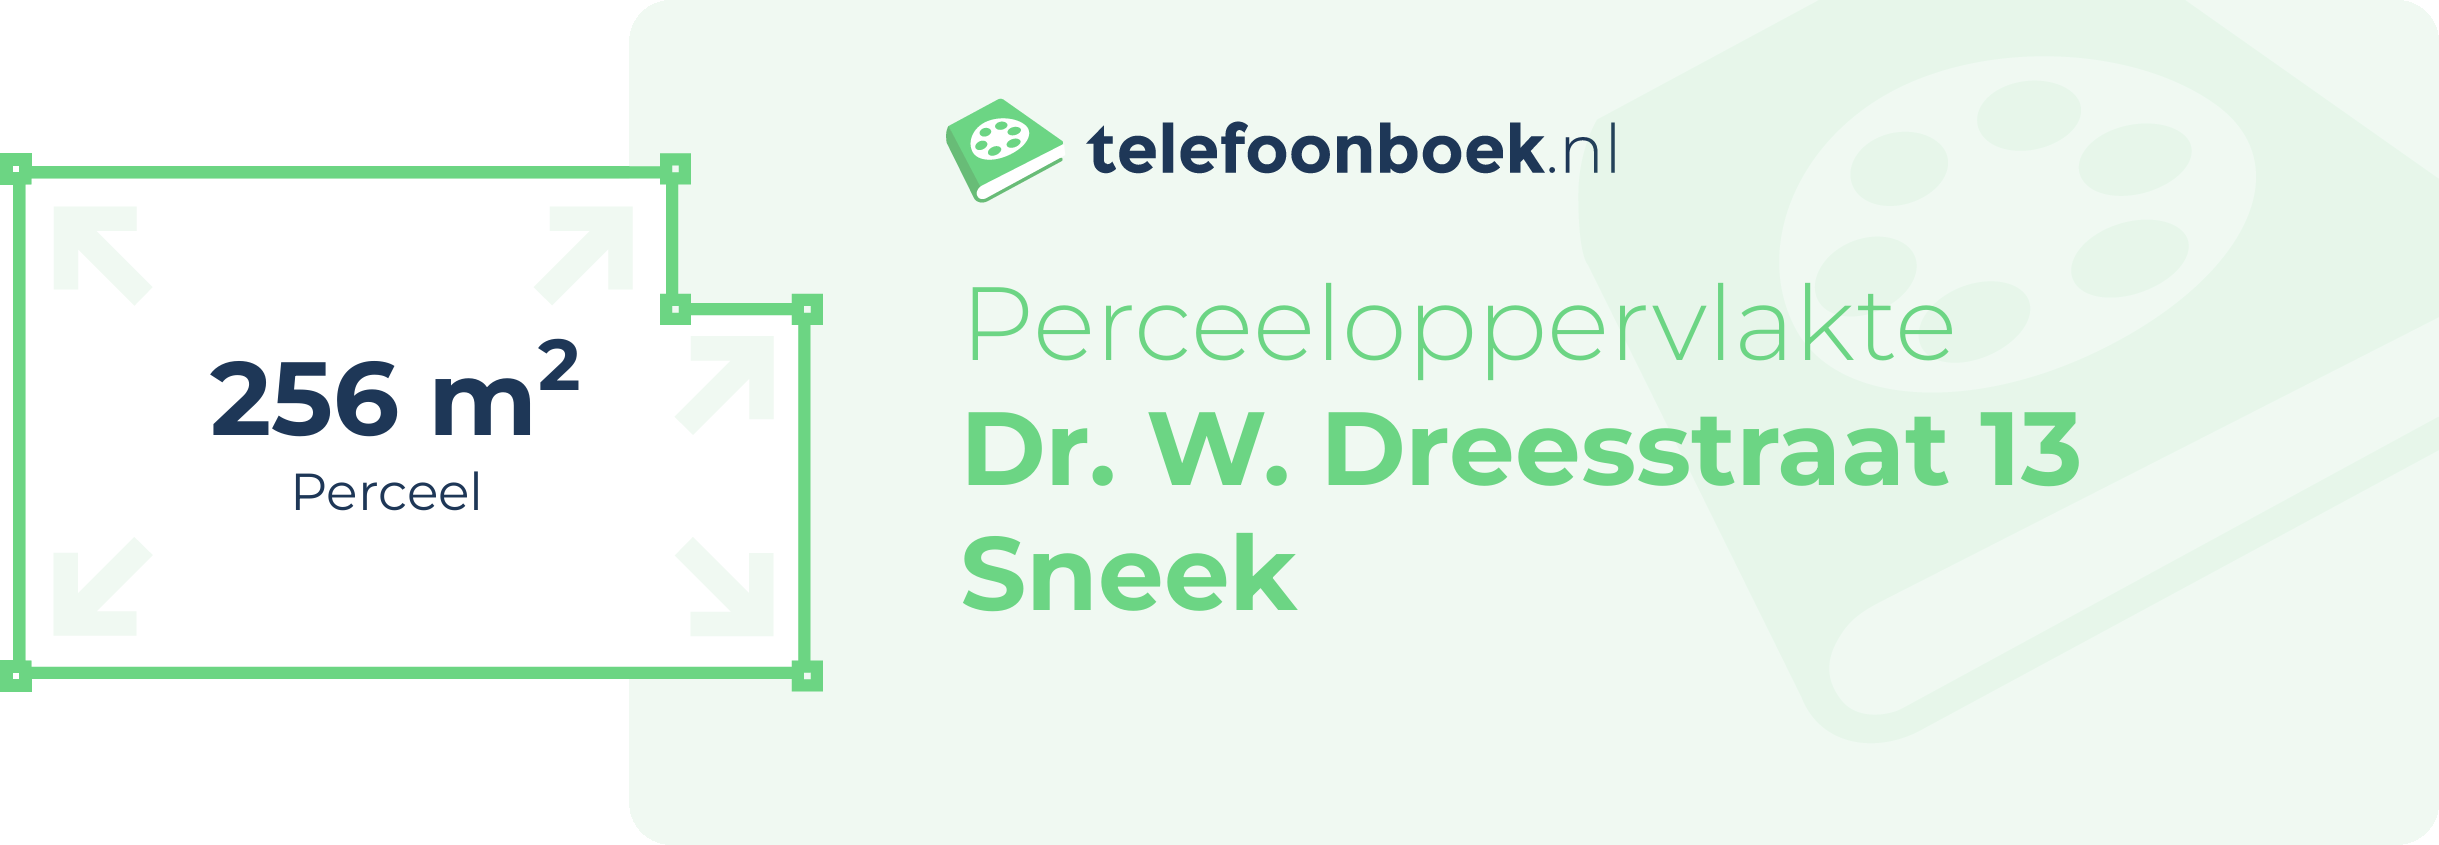 Perceeloppervlakte Dr. W. Dreesstraat 13 Sneek